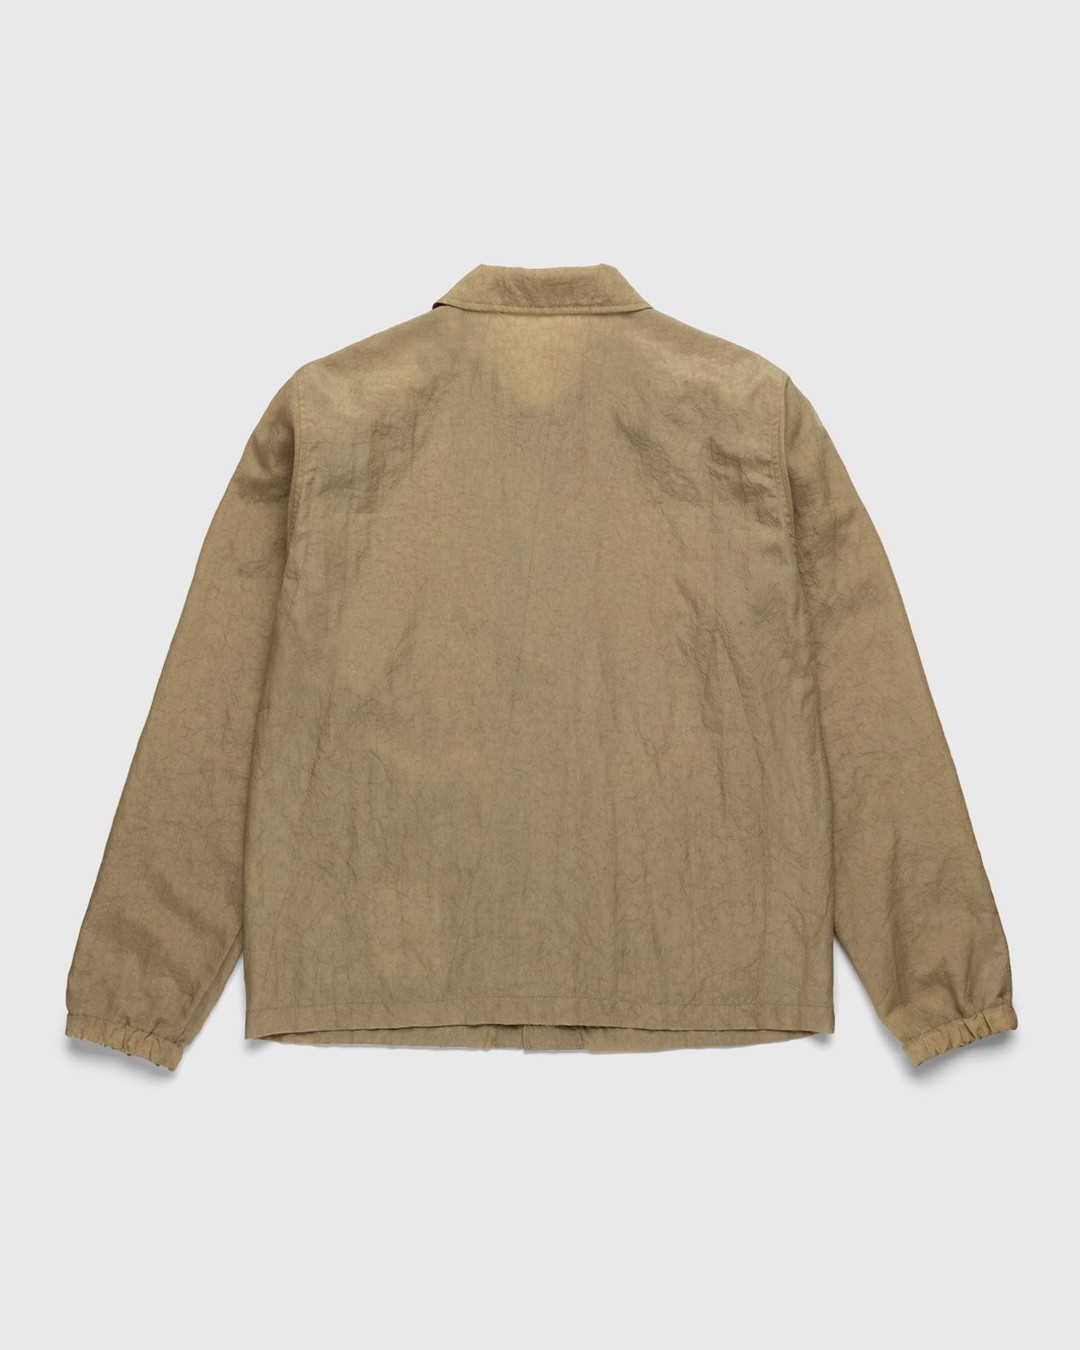 Highsnobiety – Stonewashed Nylon Coach Jacket Gold - Outerwear - Yellow - Image 2